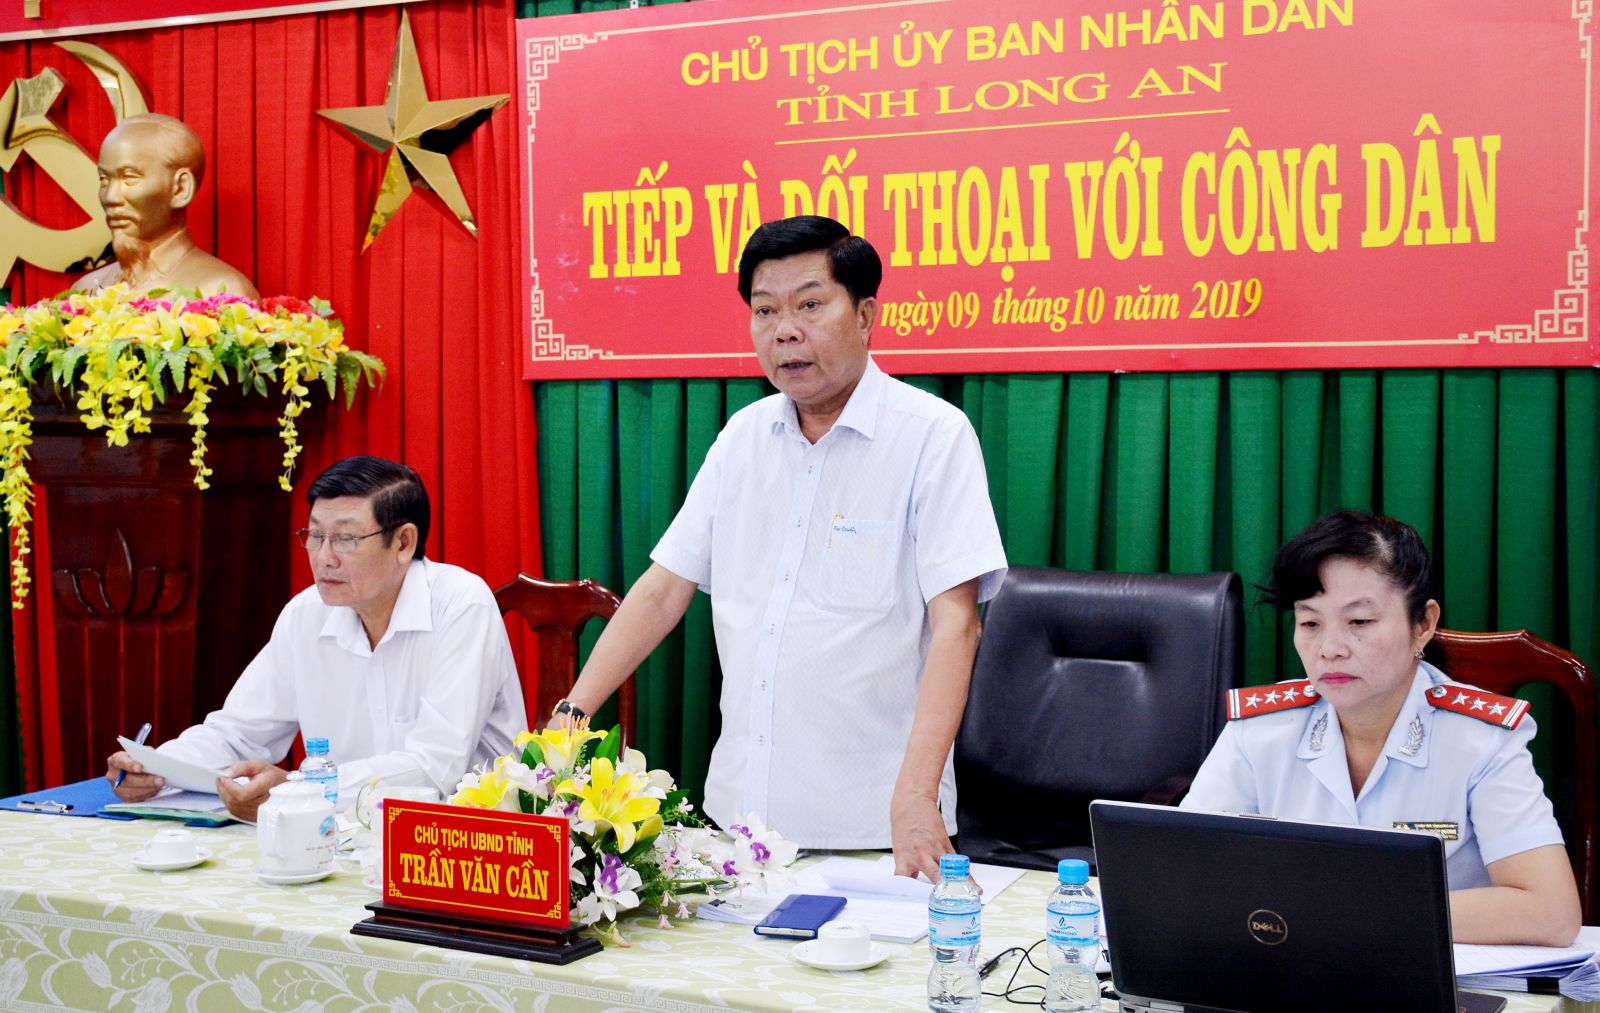 Chủ tịch UBND tỉnh - Trần Văn Cần trong một lần đối thoại, tiếp công dân